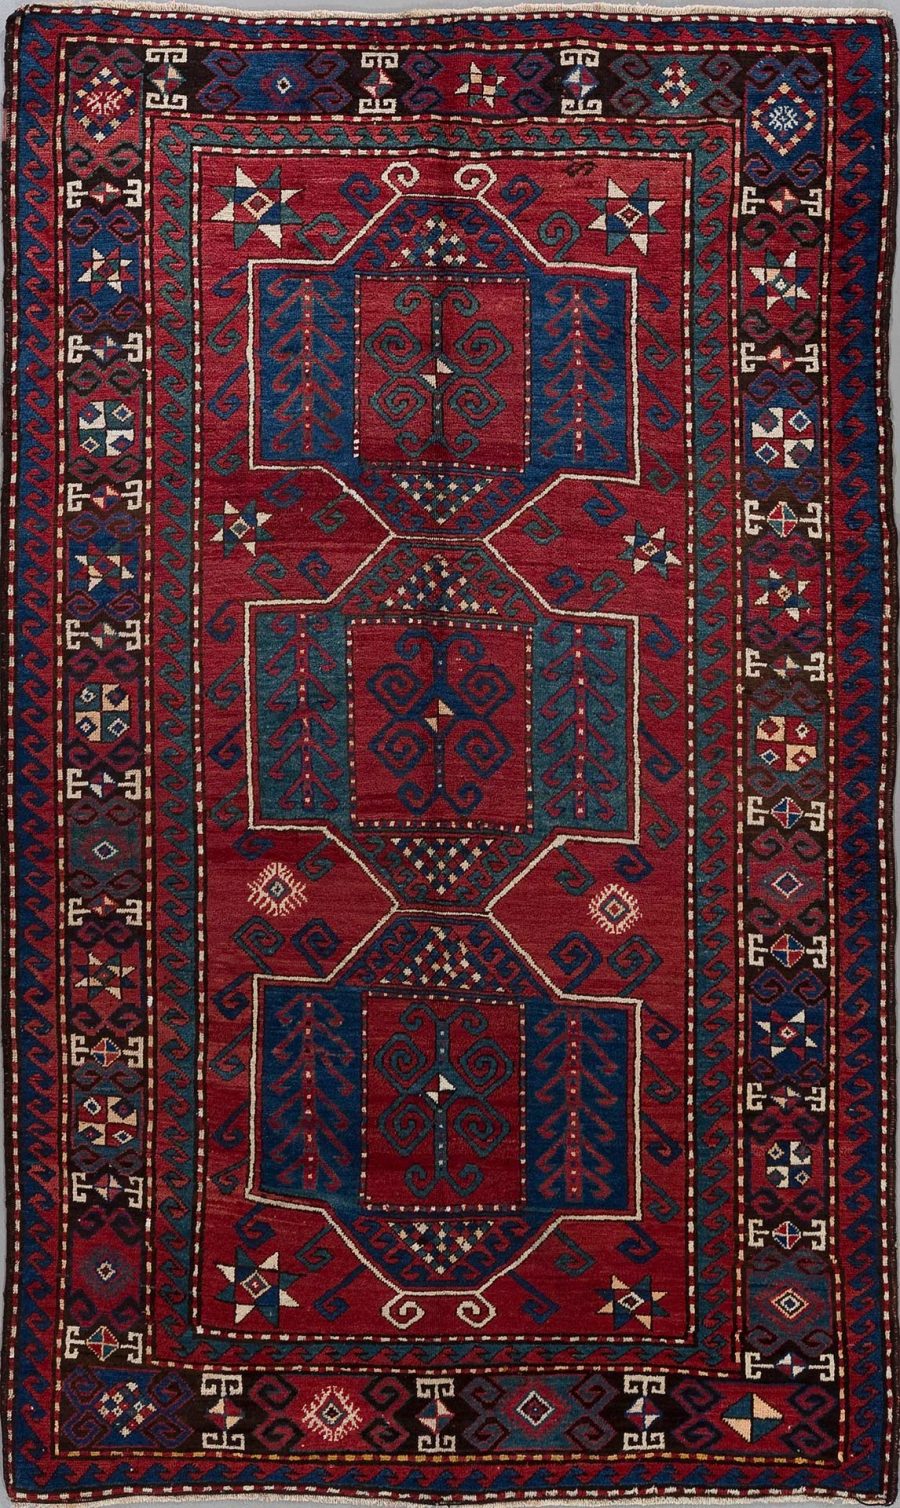 Traditioneller orientalischer Teppich mit komplexem Muster in Rot-, Blau- und Beigetönen, umgeben von mehreren dekorativen Bordüren mit geometrischen und pflanzlichen Motiven.